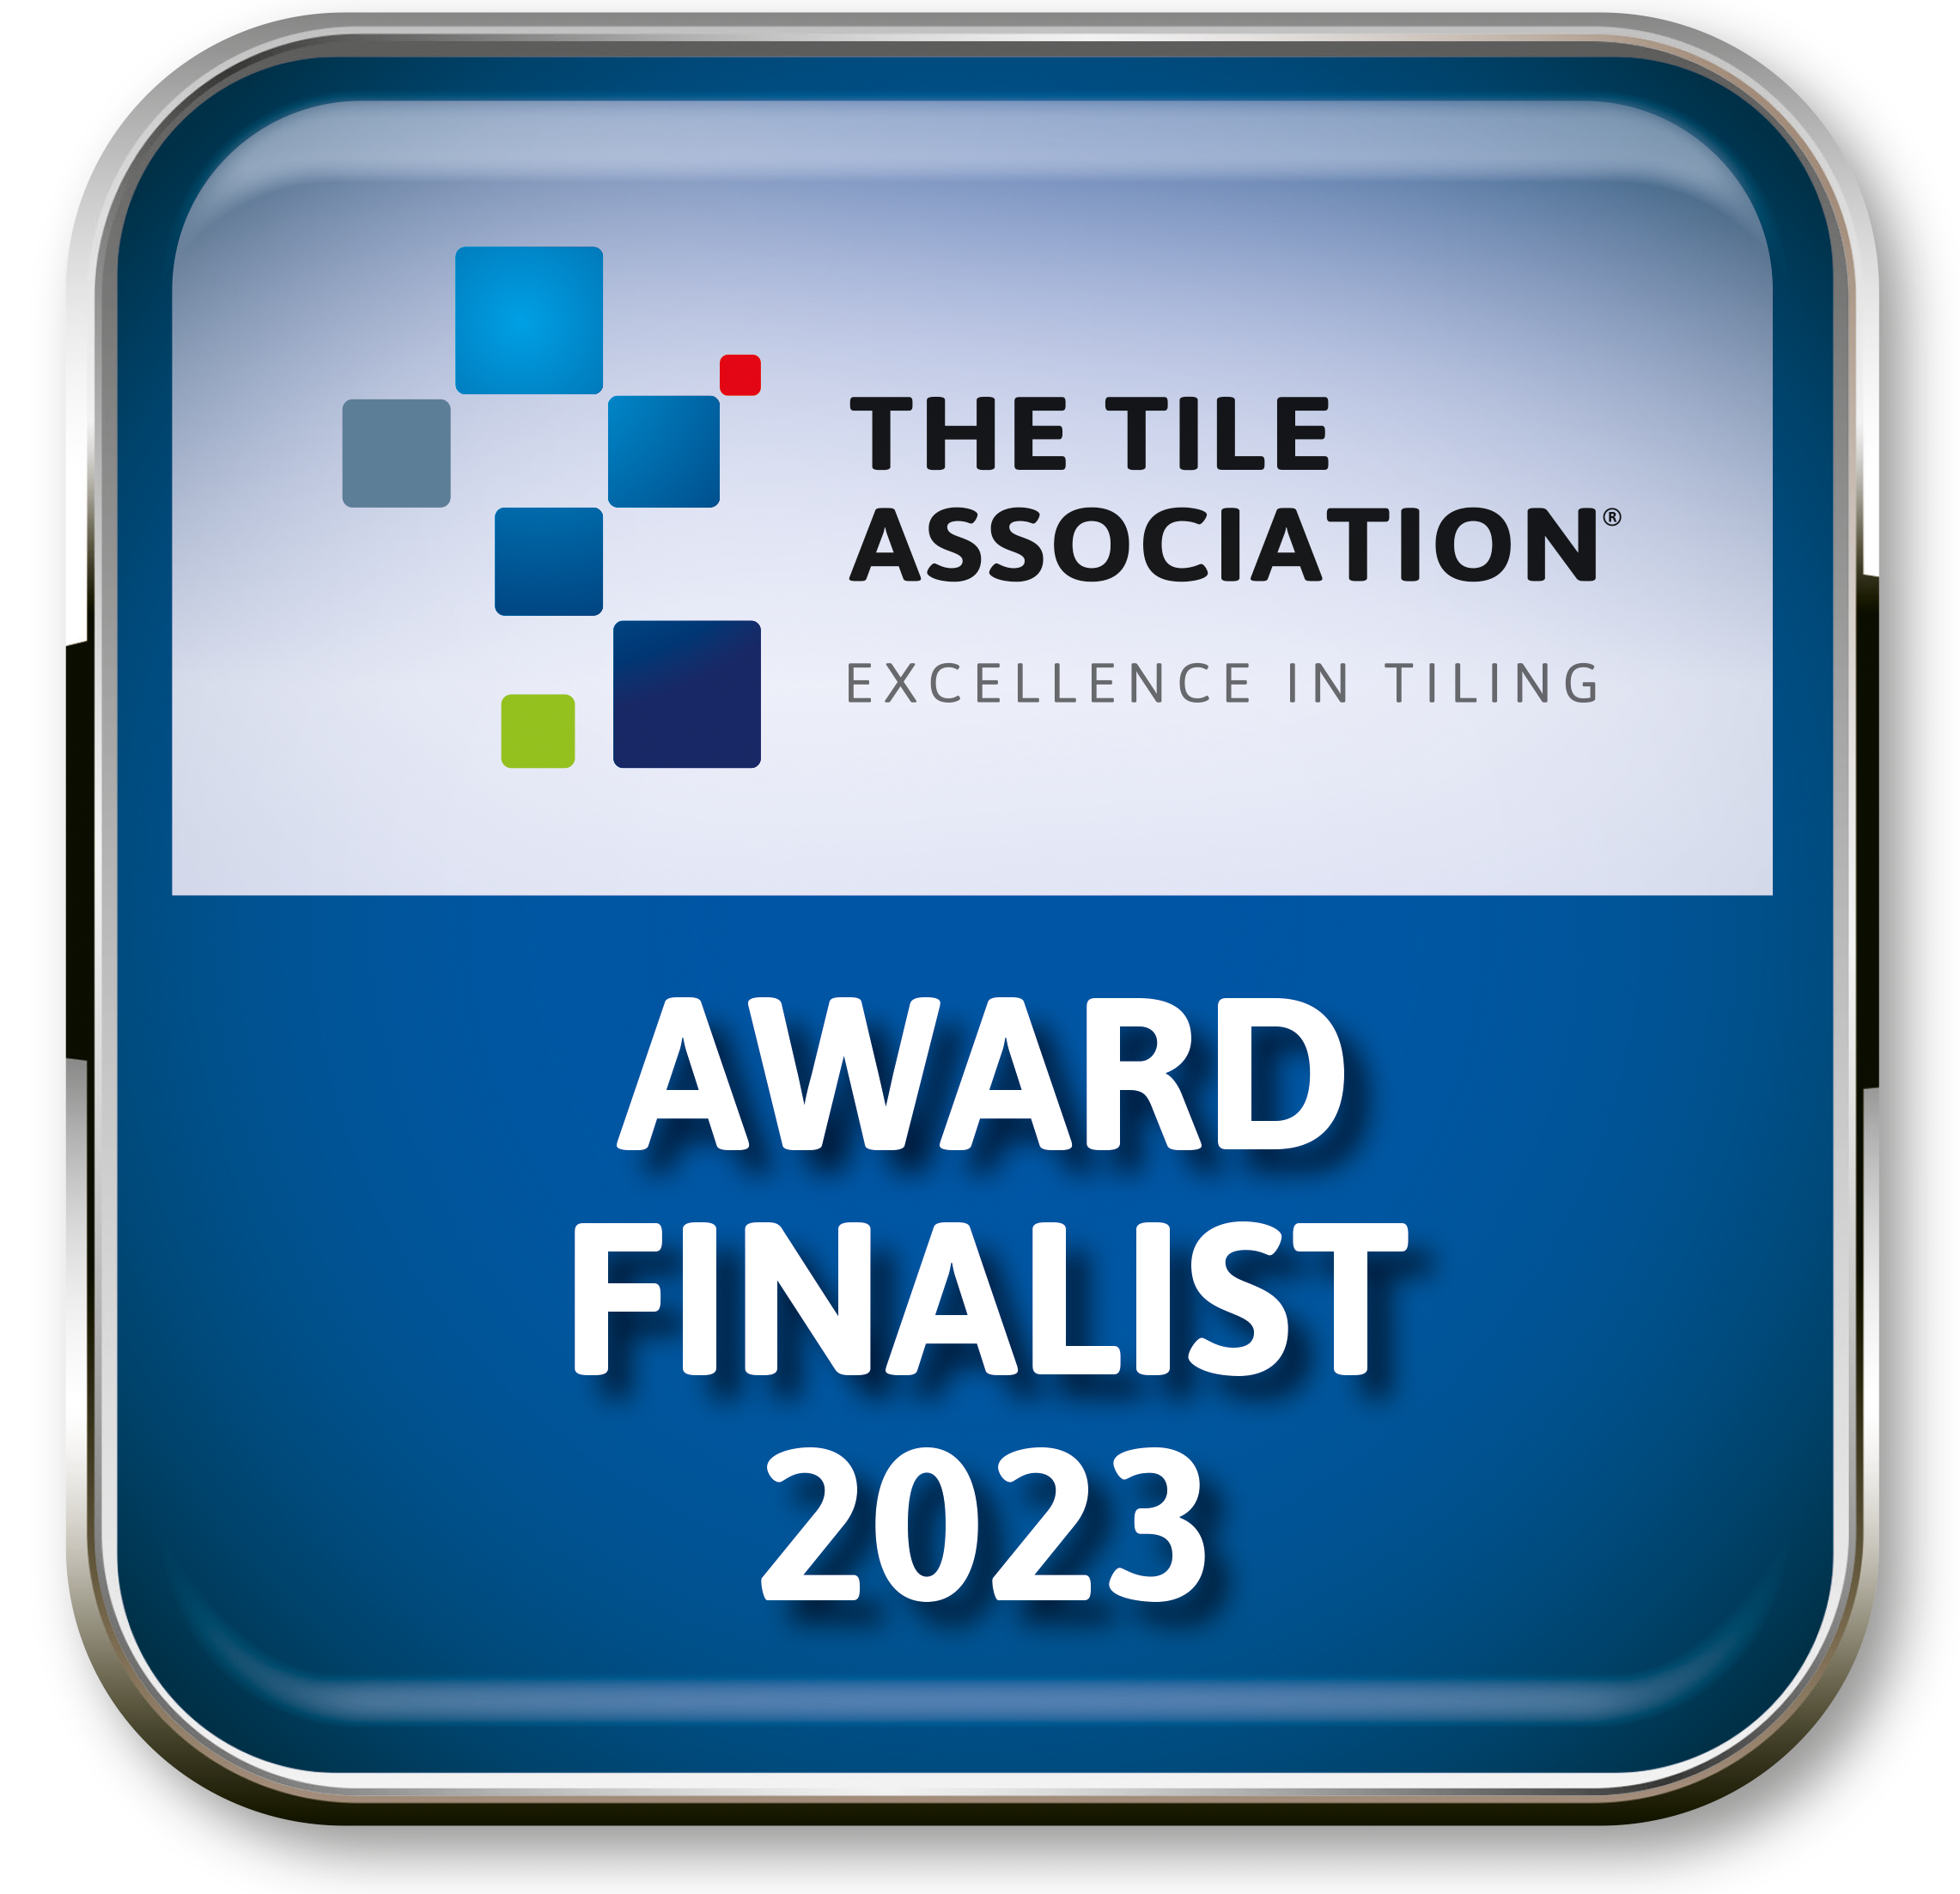 Tilers association award finalist 2023